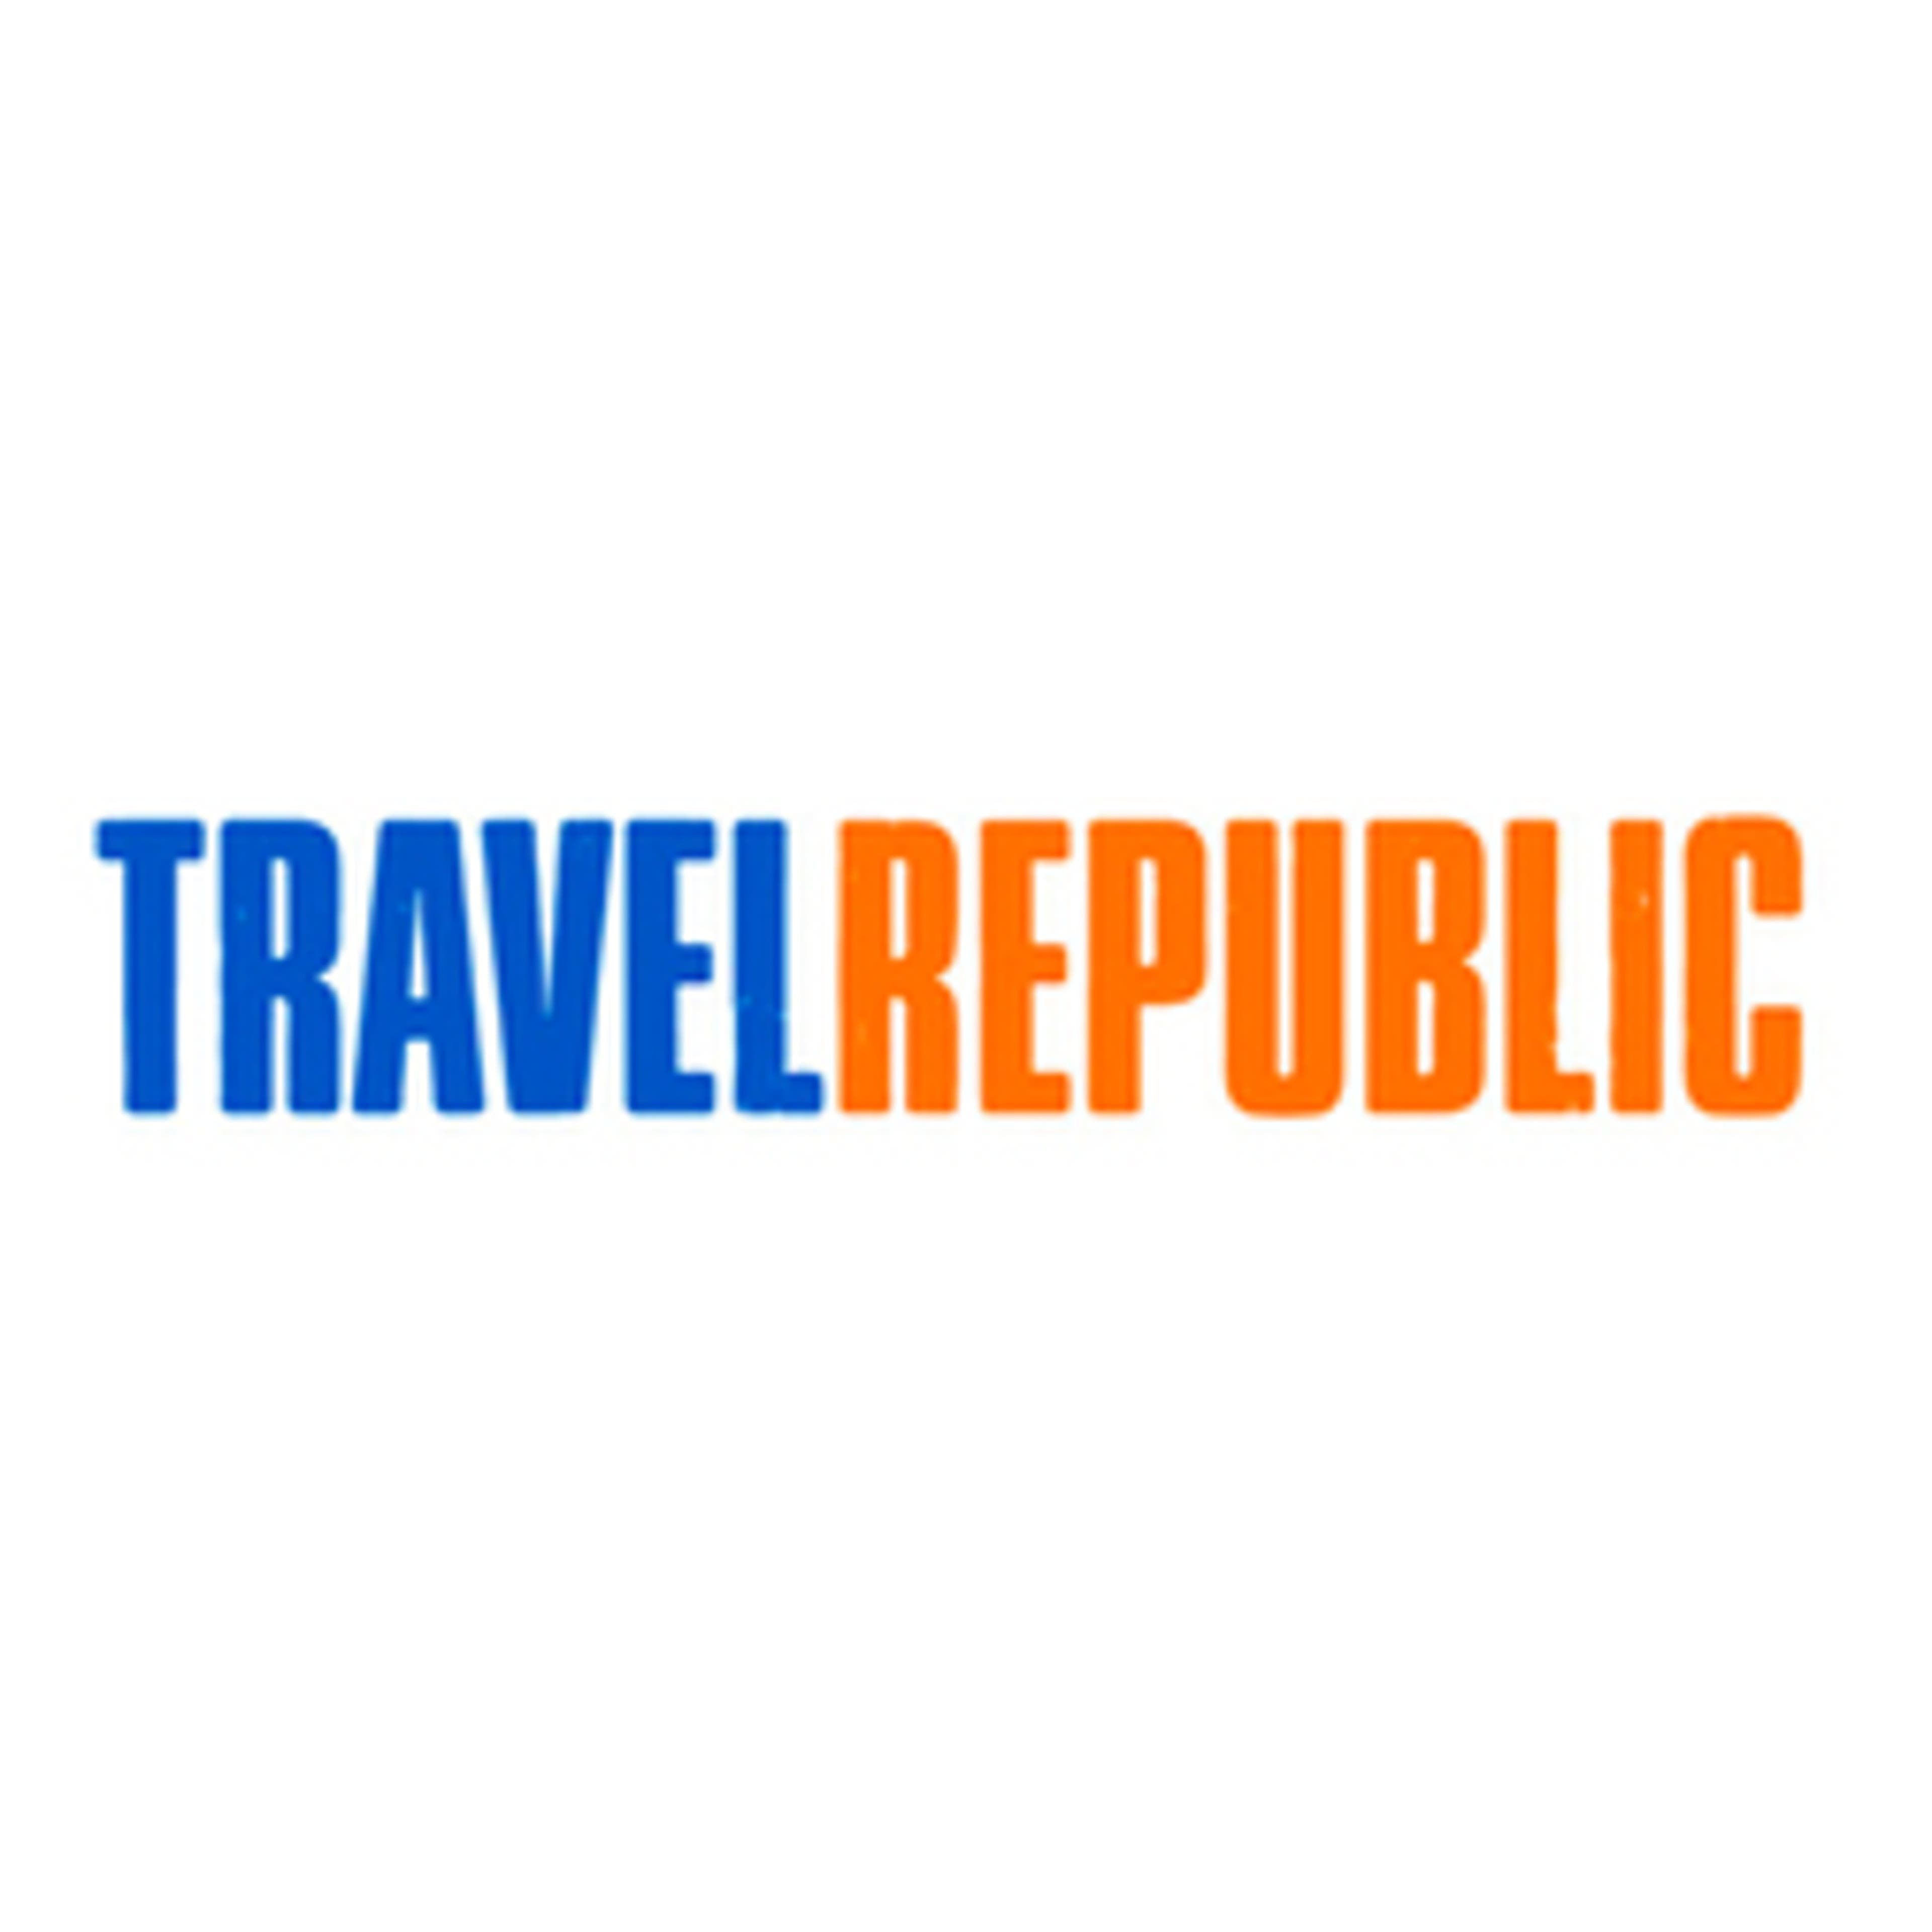  Travel Republic 